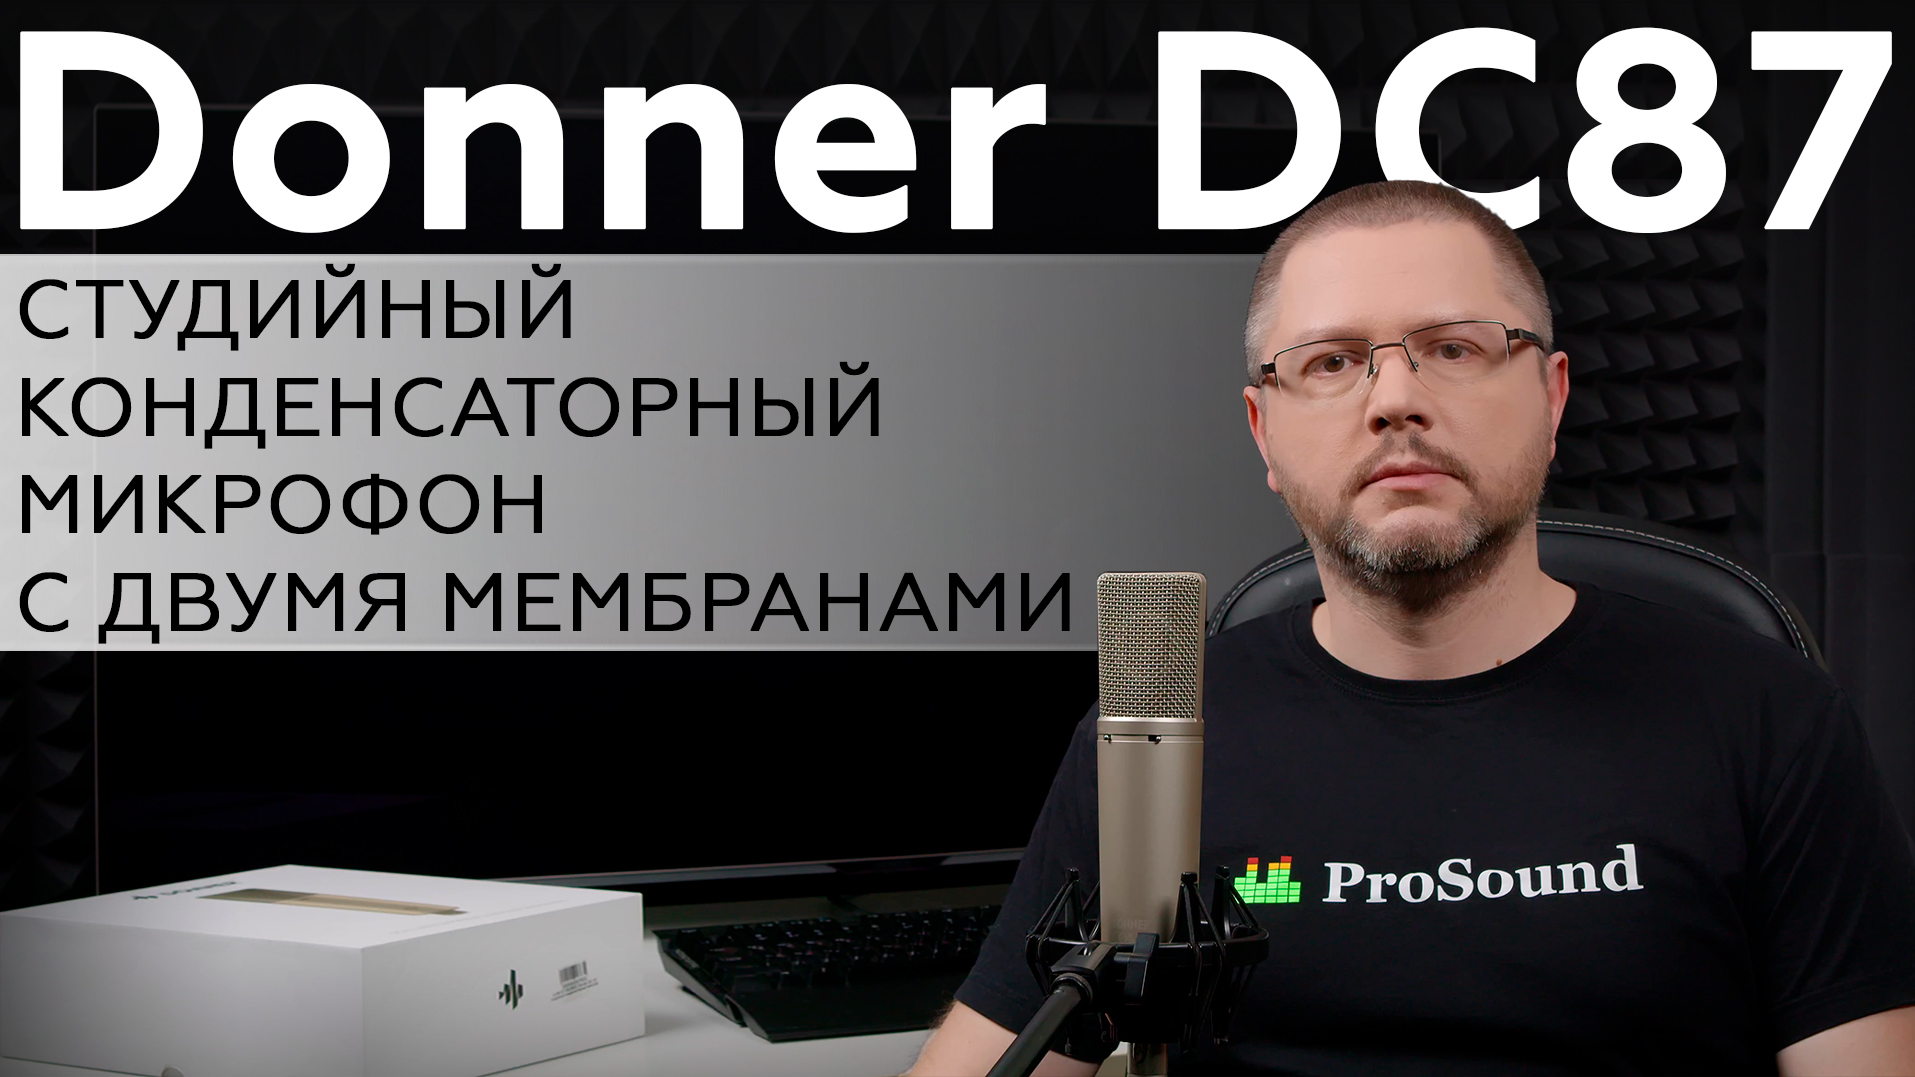 Студийный конденсаторный микрофон Donner DC87